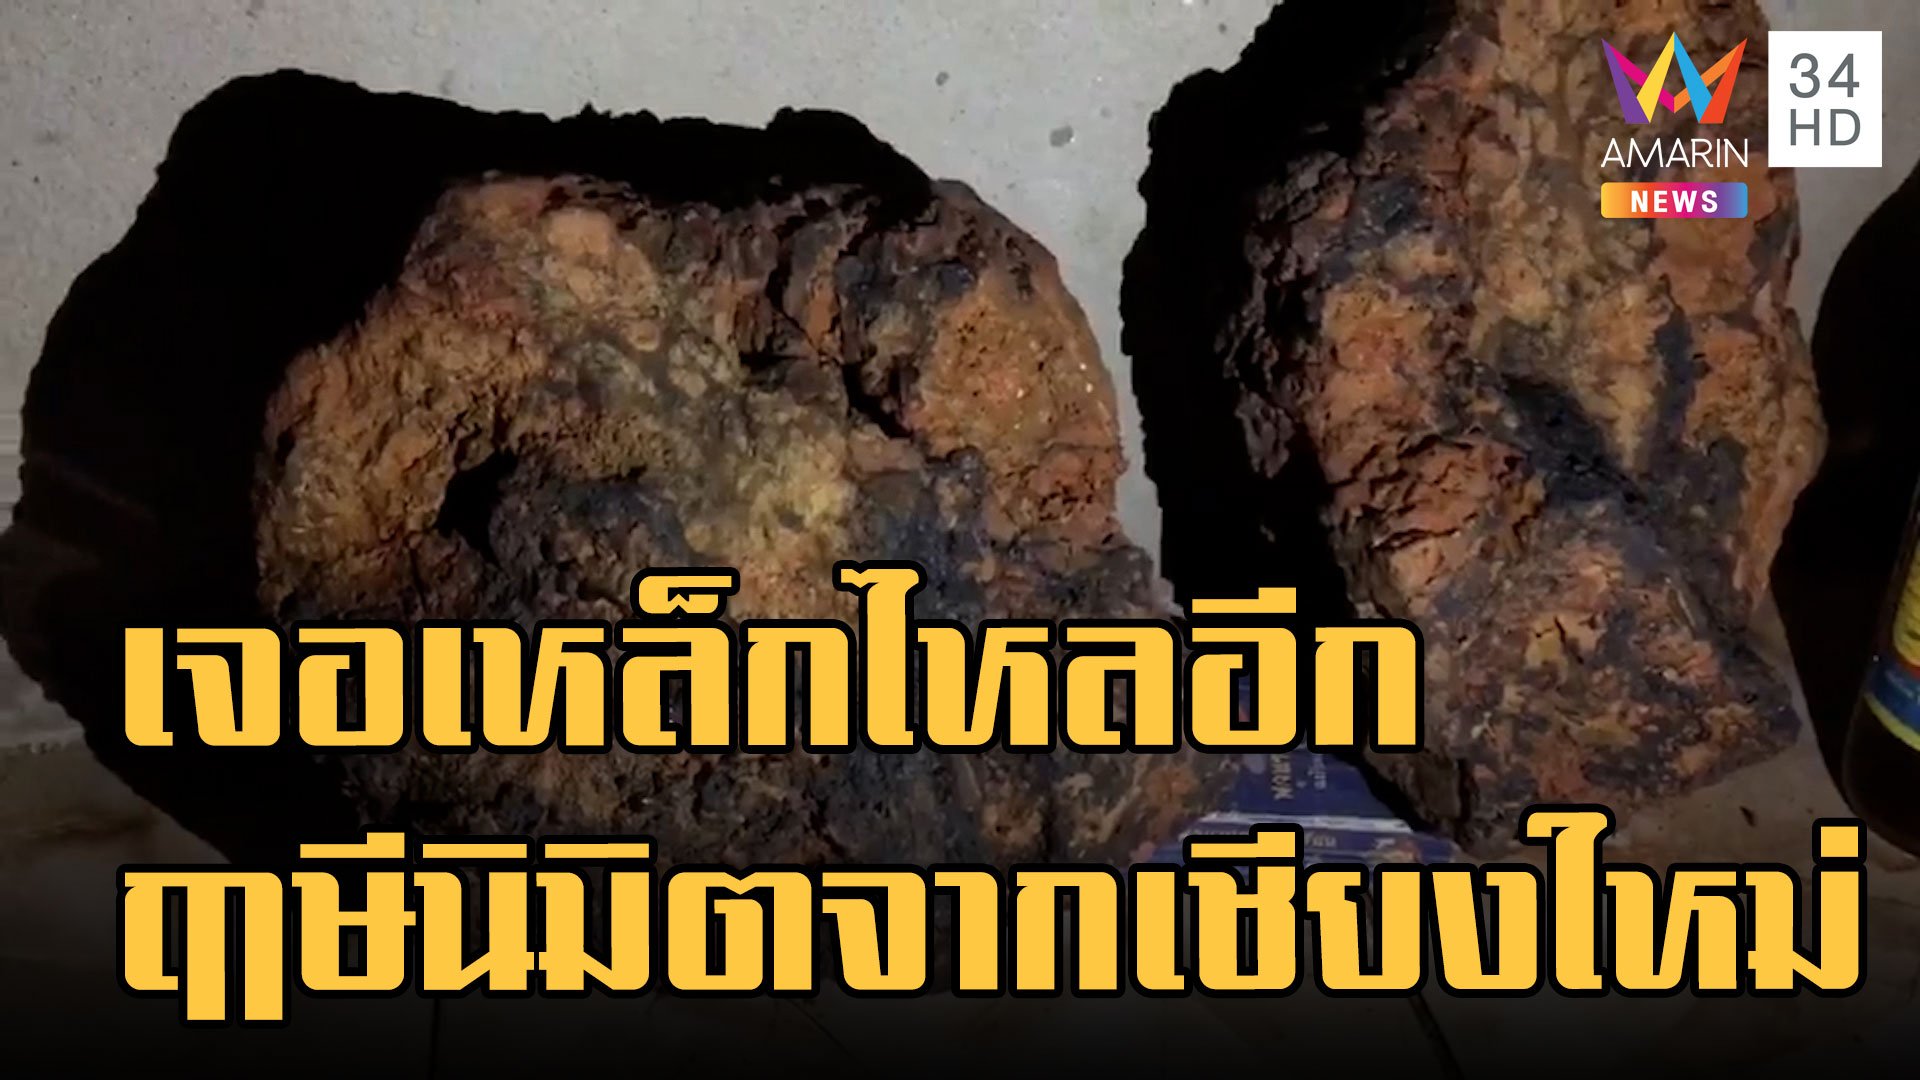 เจออีกรังเหล็กไหล 100 ล้าน ฤาษีโทรหารอบนี้เจอจริงโผล่ในหิน | ข่าวอรุณอมรินทร์ | 25 ก.ย. 65 | AMARIN TVHD34